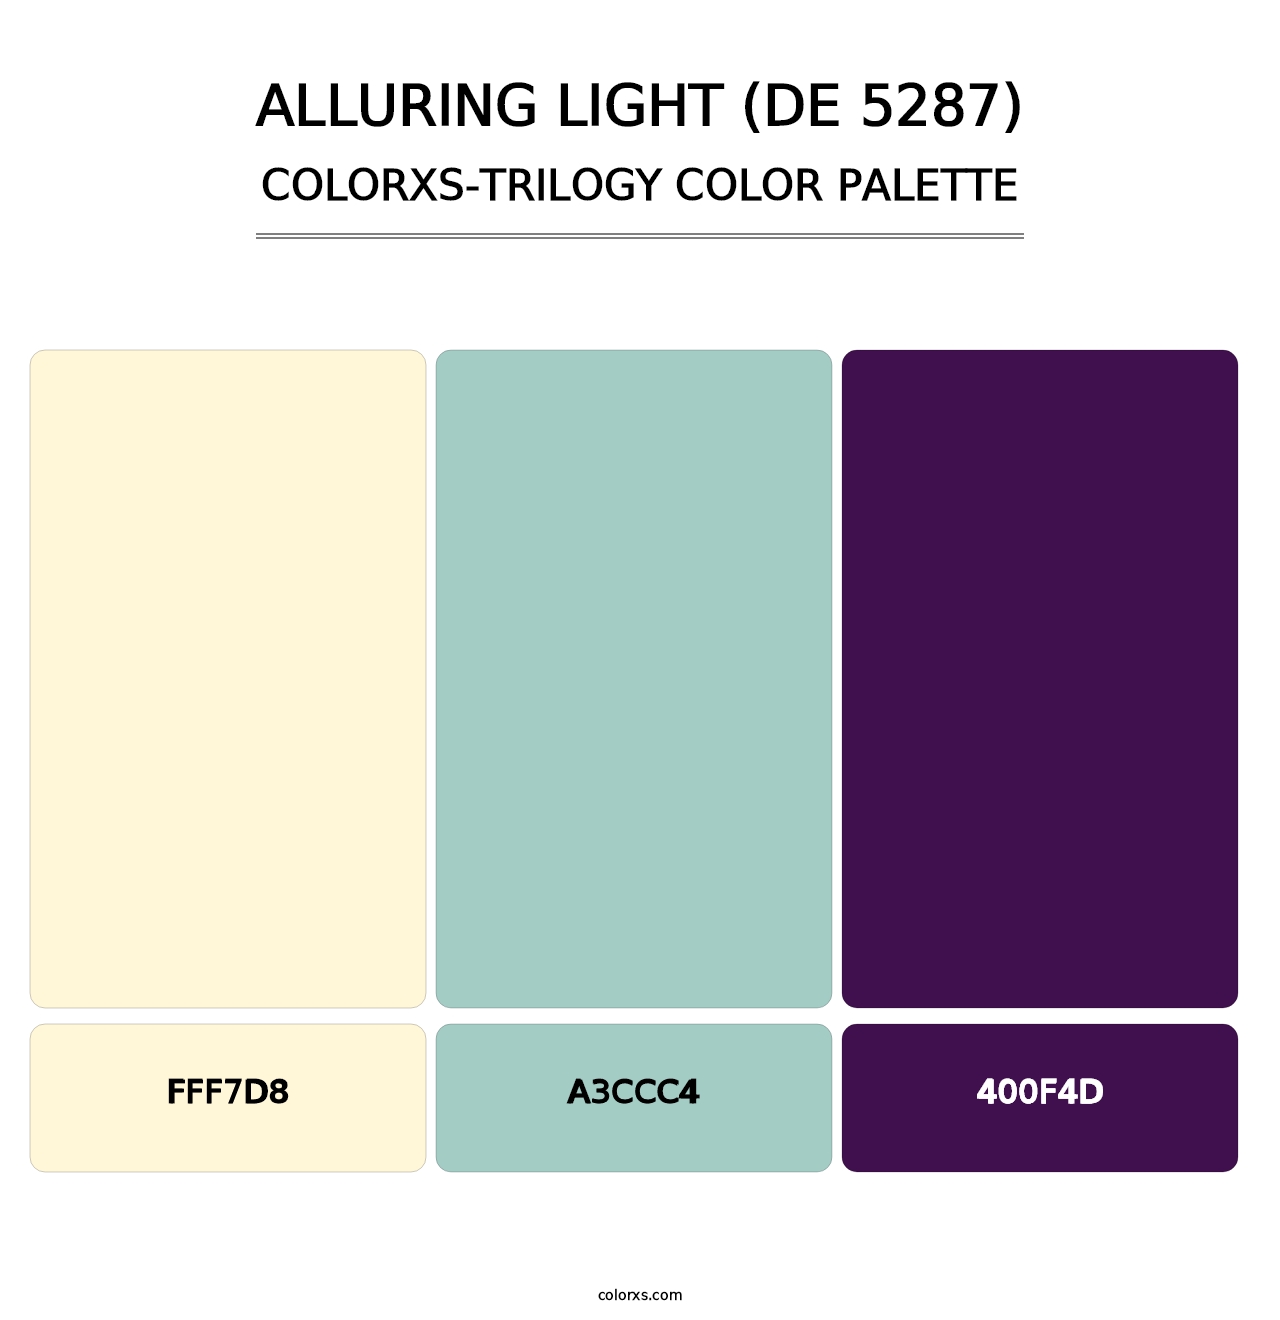 Alluring Light (DE 5287) - Colorxs Trilogy Palette